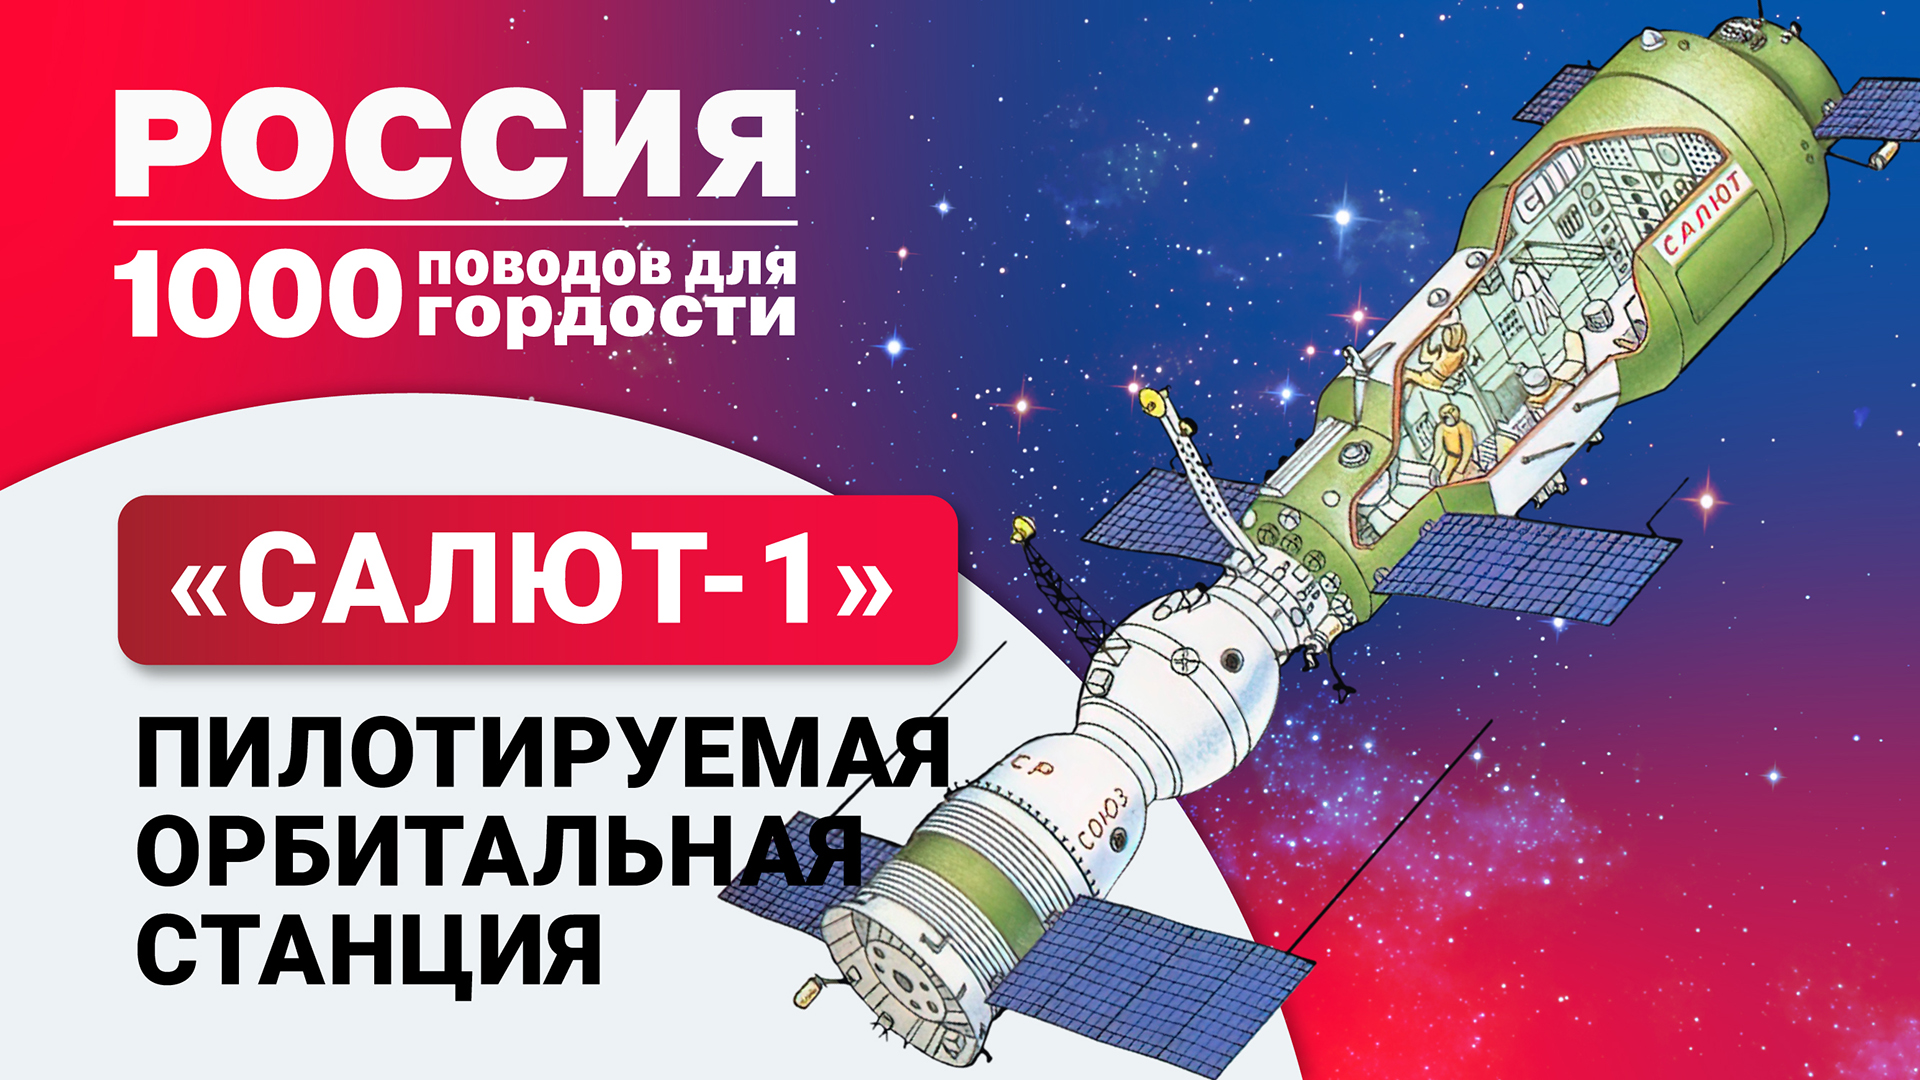 Пилотируемая орбитальная станция «Салют-1»